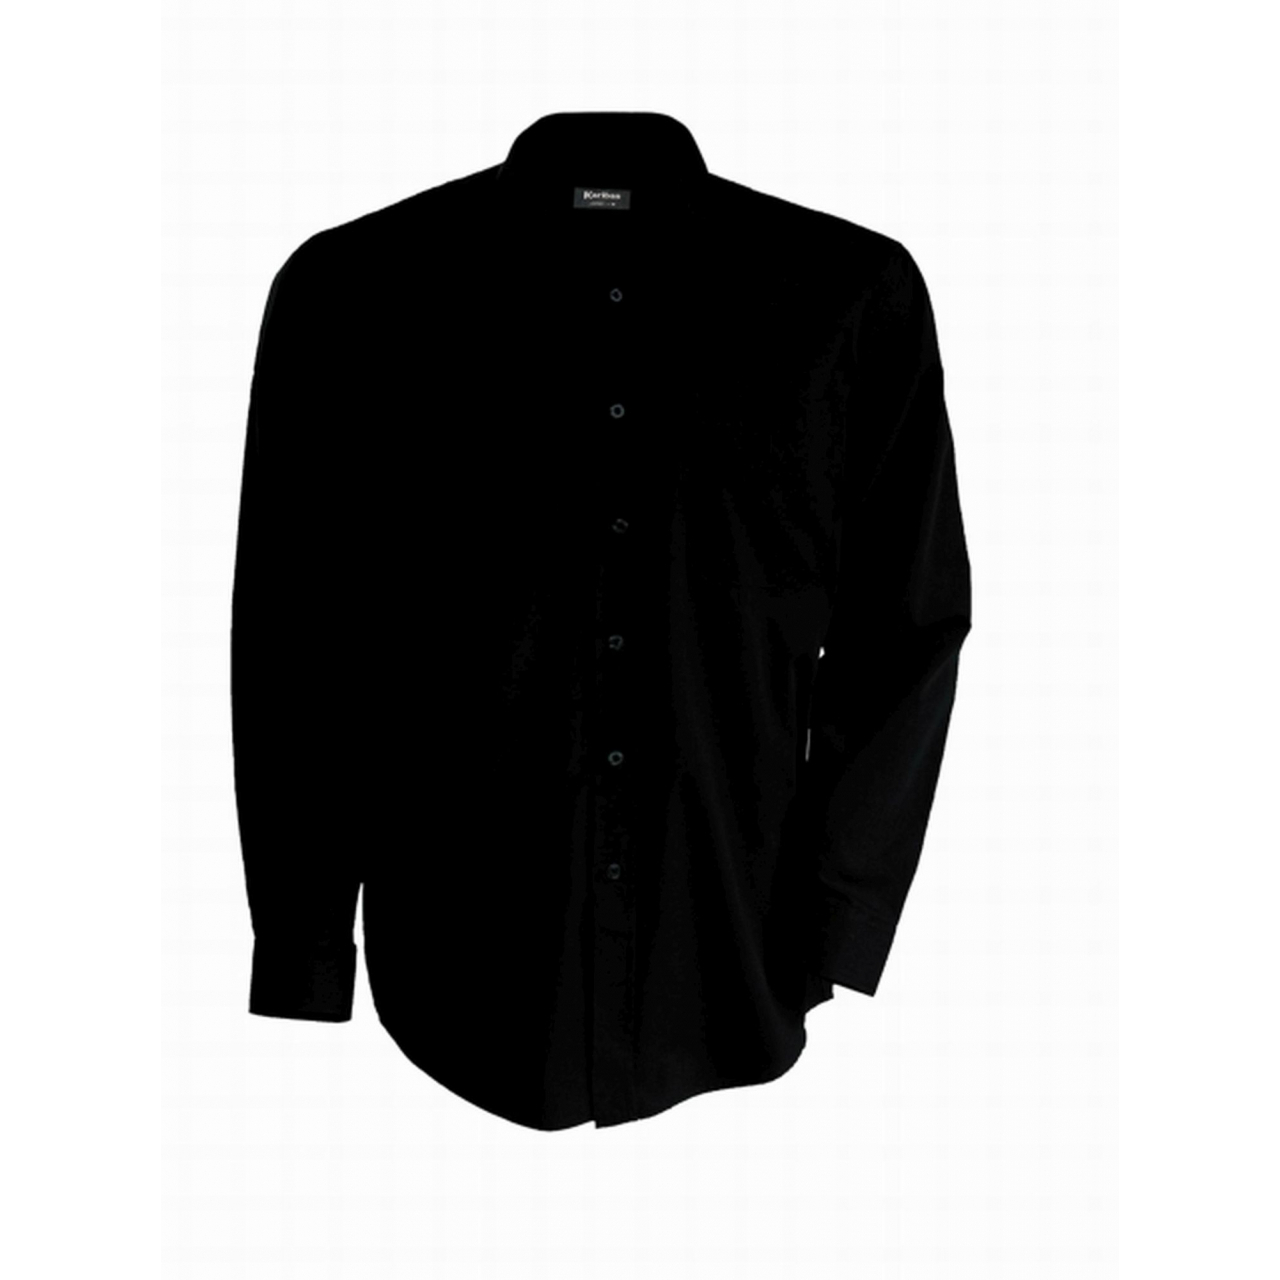 Pánská košile Kariban dlouhý rukáv v nežehlivé úpravě - černá, XXL